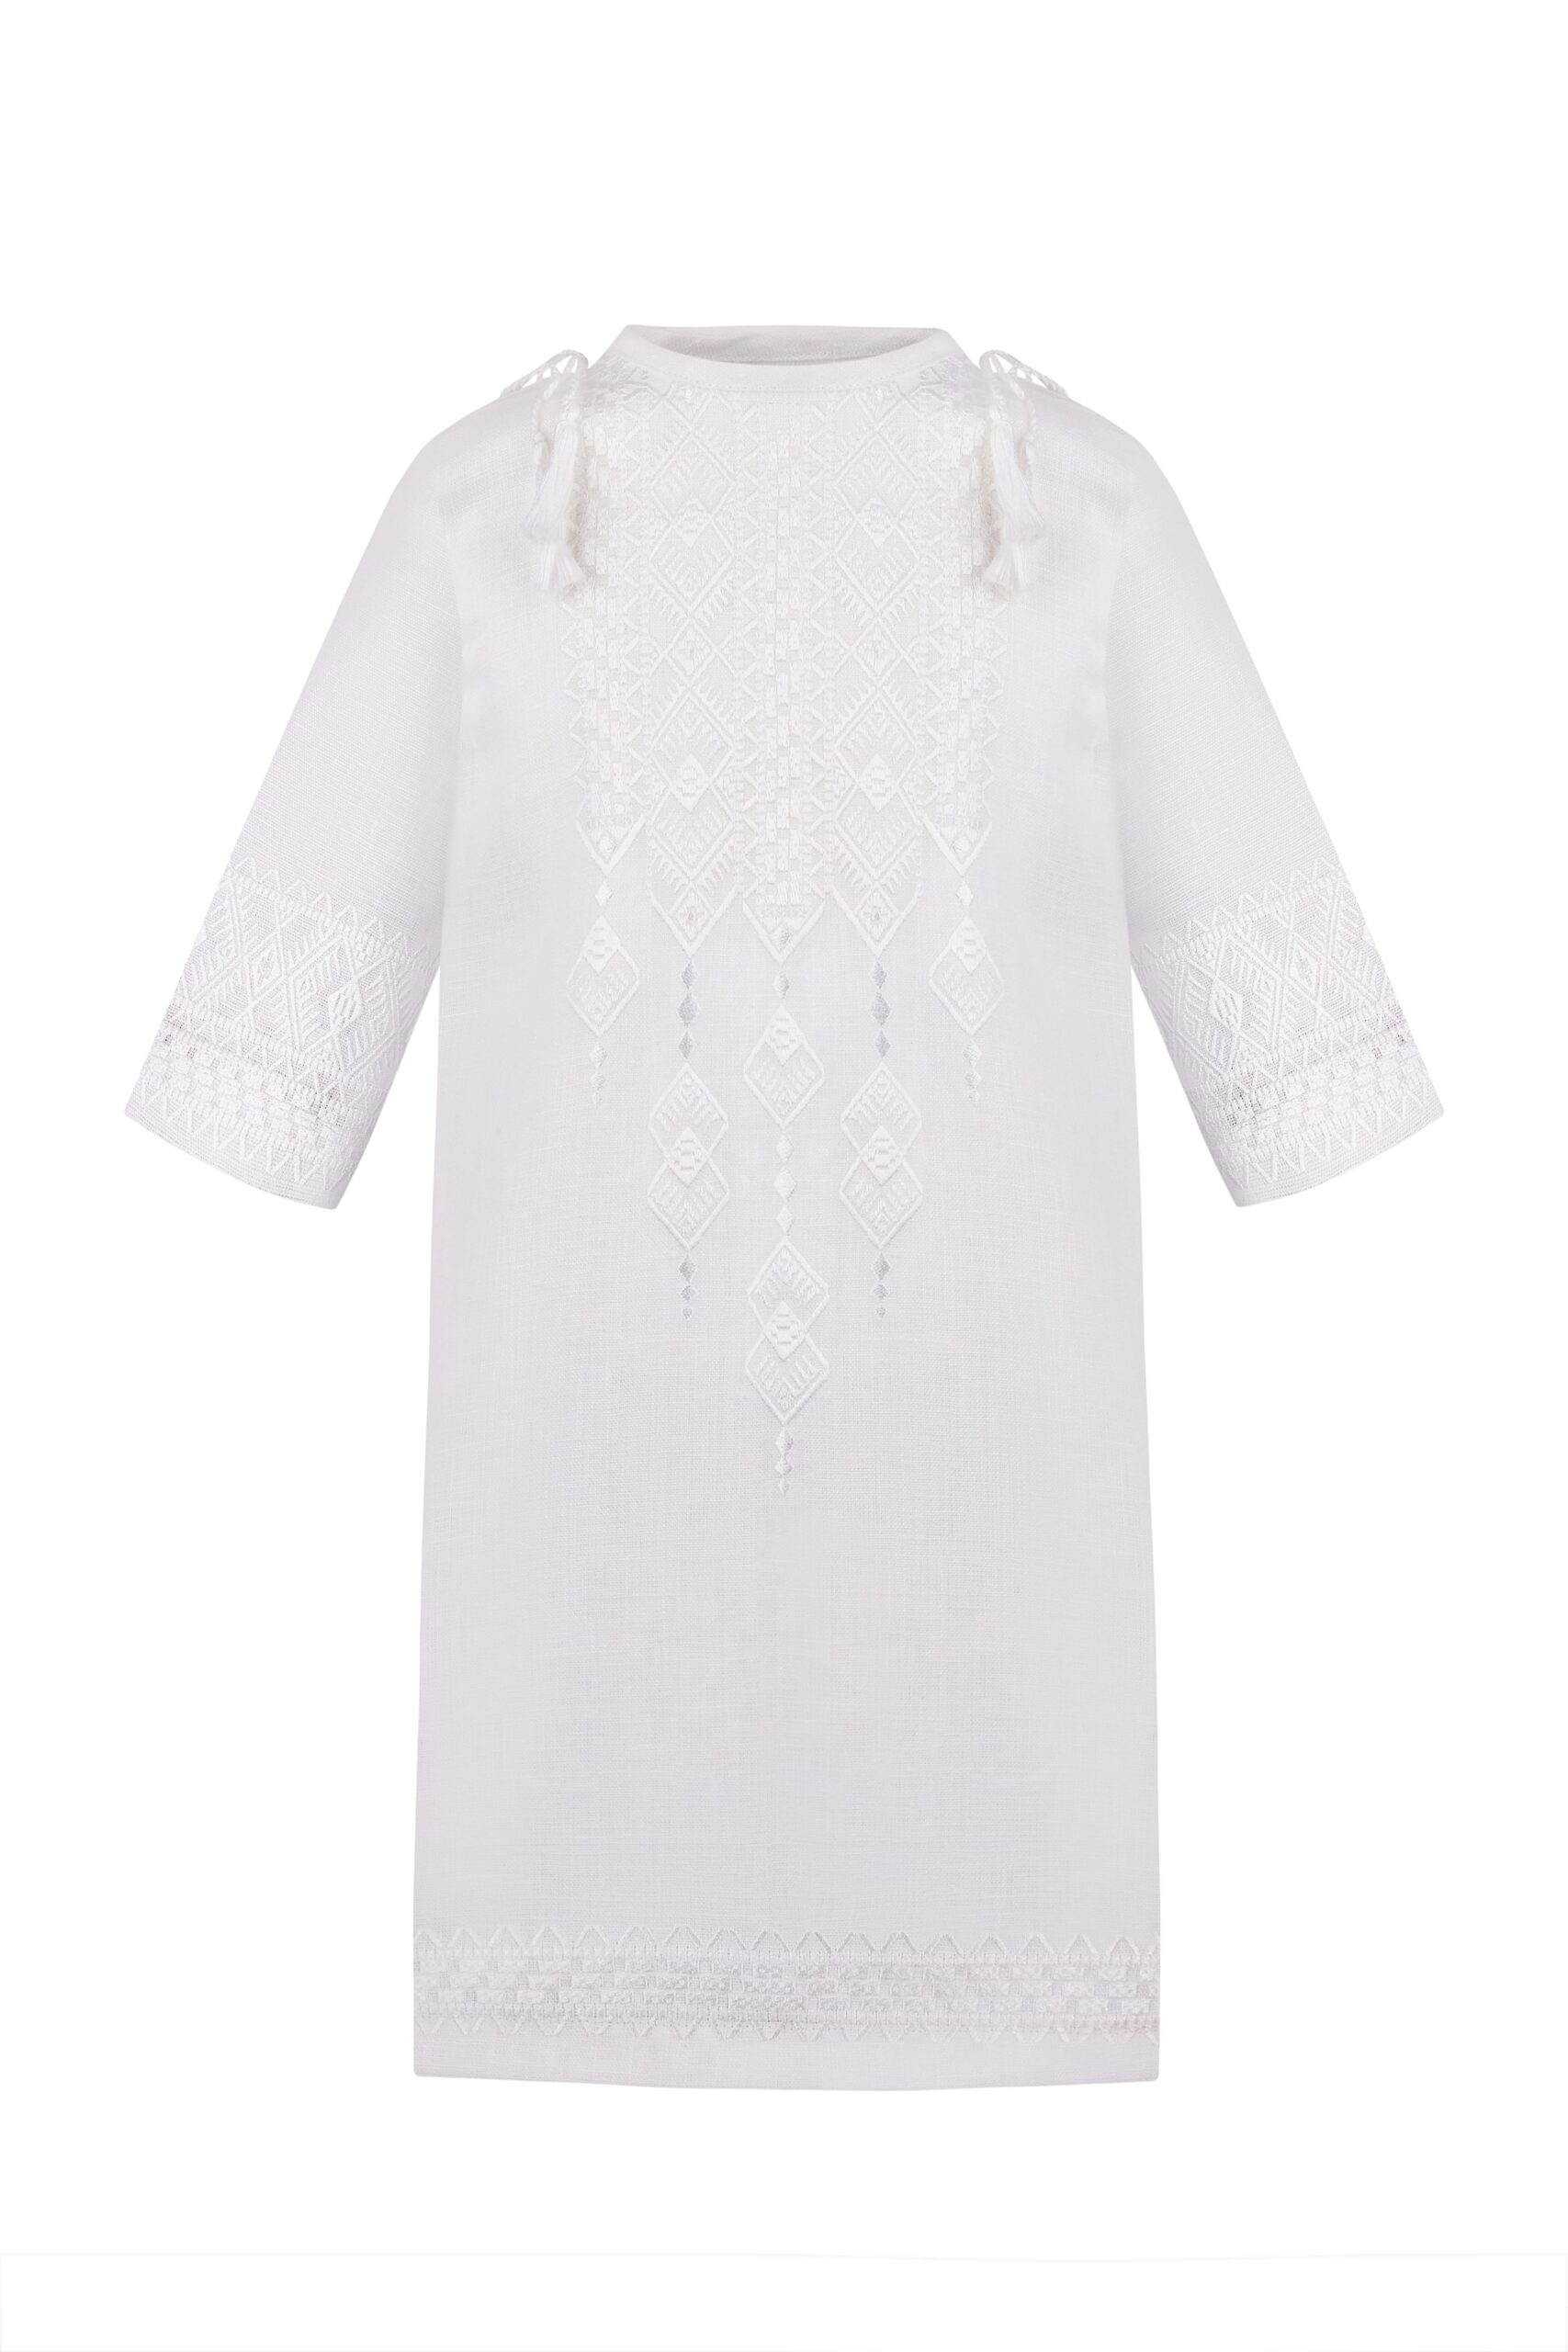 Shirt for baptism of white linen